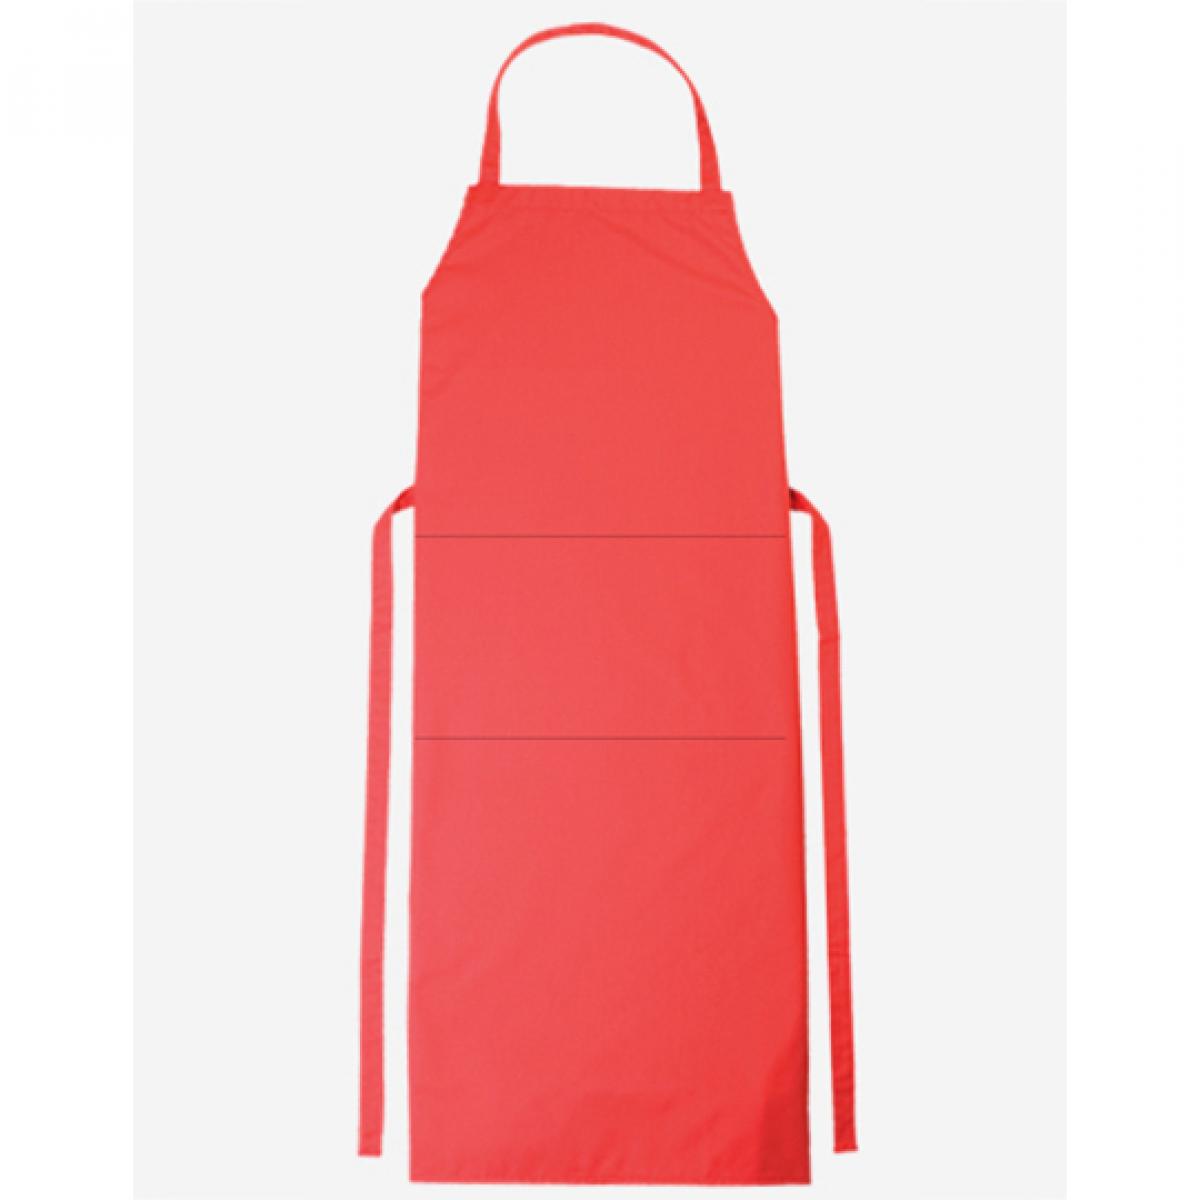 Hersteller: CG Workwear Herstellernummer: 01146-01 Artikelbezeichnung: Latzschürze Verona Classic Bag 90 x 75 cm Farbe: Red